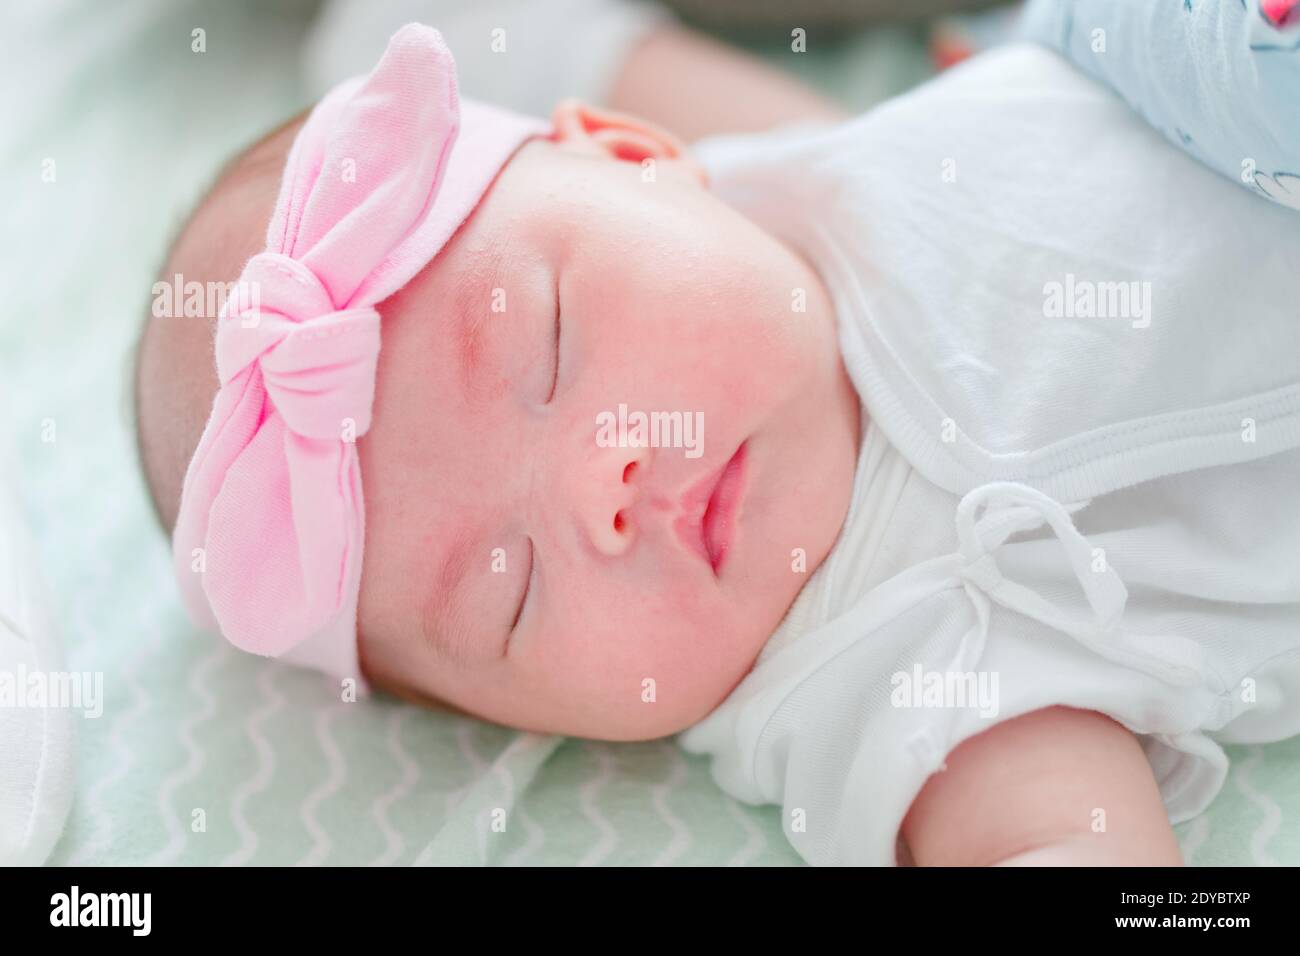 Neugeborenes chinesisches Baby Mädchen nur einen Monat alt schlafen solide  mit rosa Band auf dem Kopf Stockfotografie - Alamy